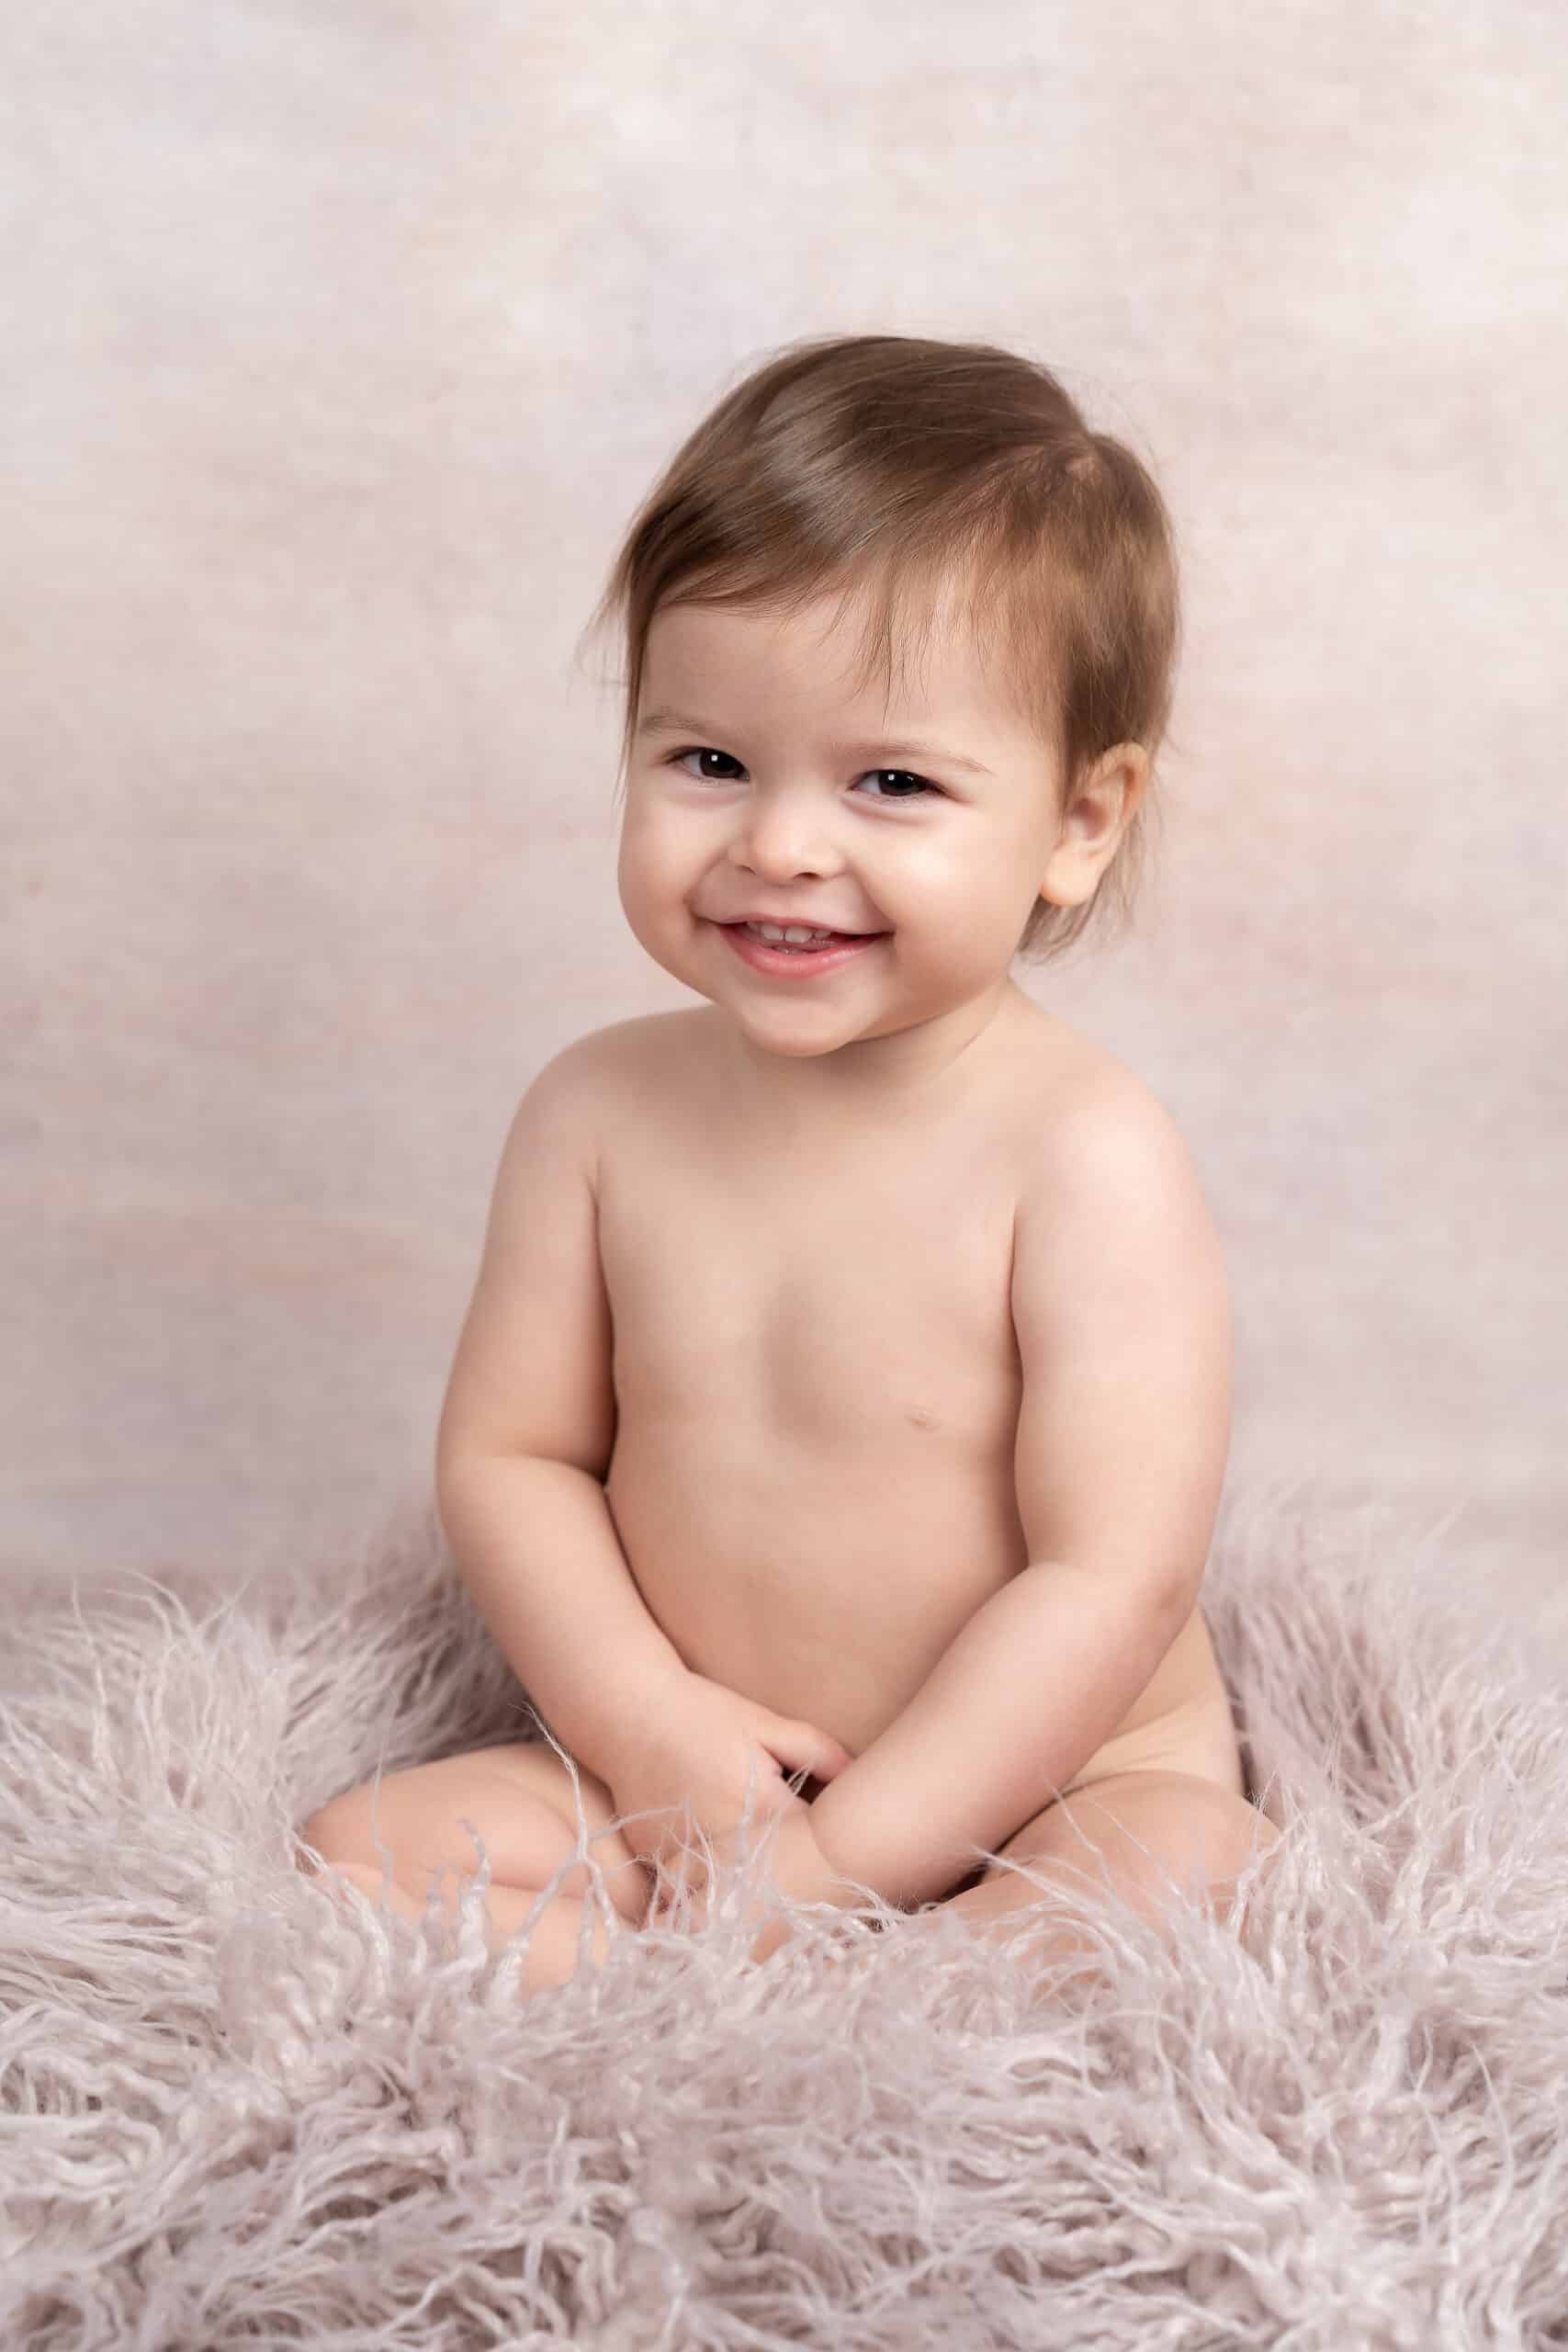 Un tout-petit souriant aux cheveux châtain clair est assis nu sur une surface douce et moelleuse sur un fond neutre. La prise de vue photo bébé capture le contentement et le bonheur de l'enfant, avec les mains doucement posées sur ses genoux | Cette photo de bébé est réalisée par Tribe Photography | Gaëlle Massart